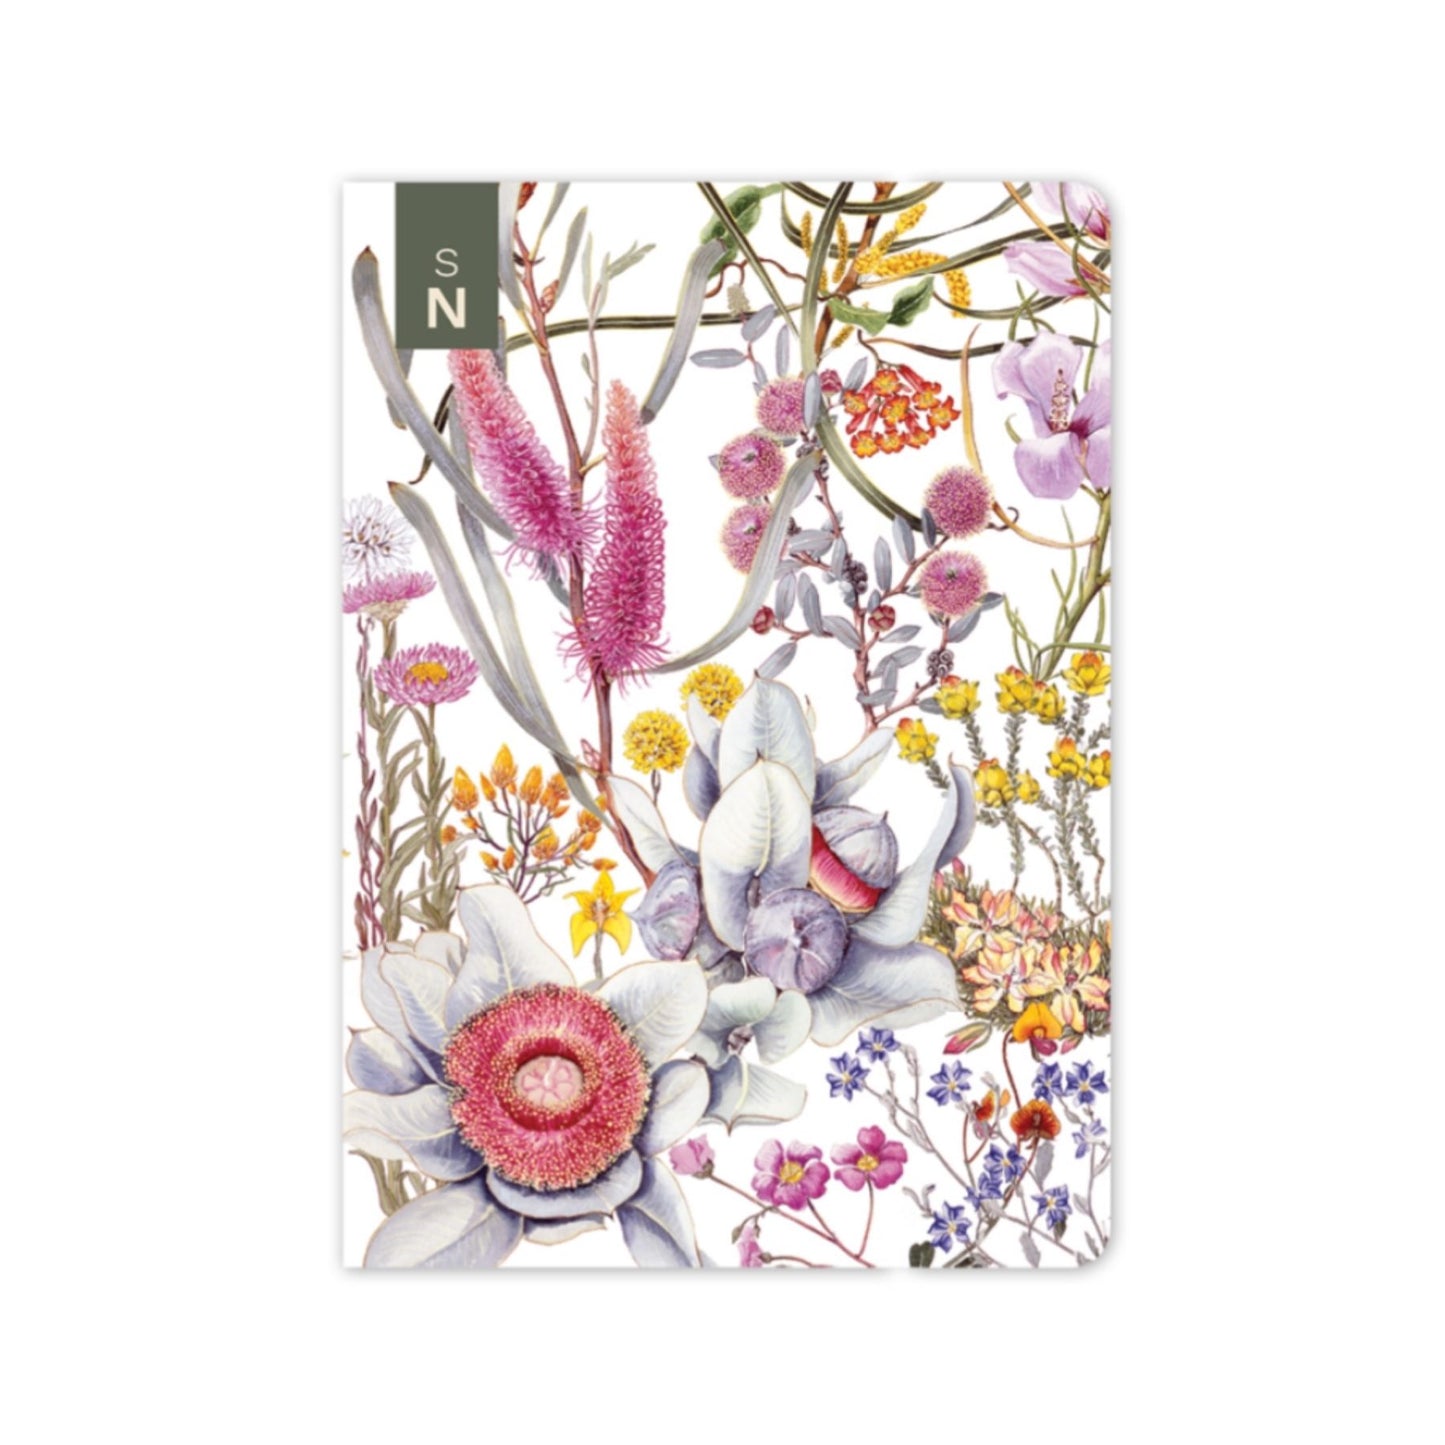 Studio N- Northern Wheatbelt Wildflowers Pocket Notebook